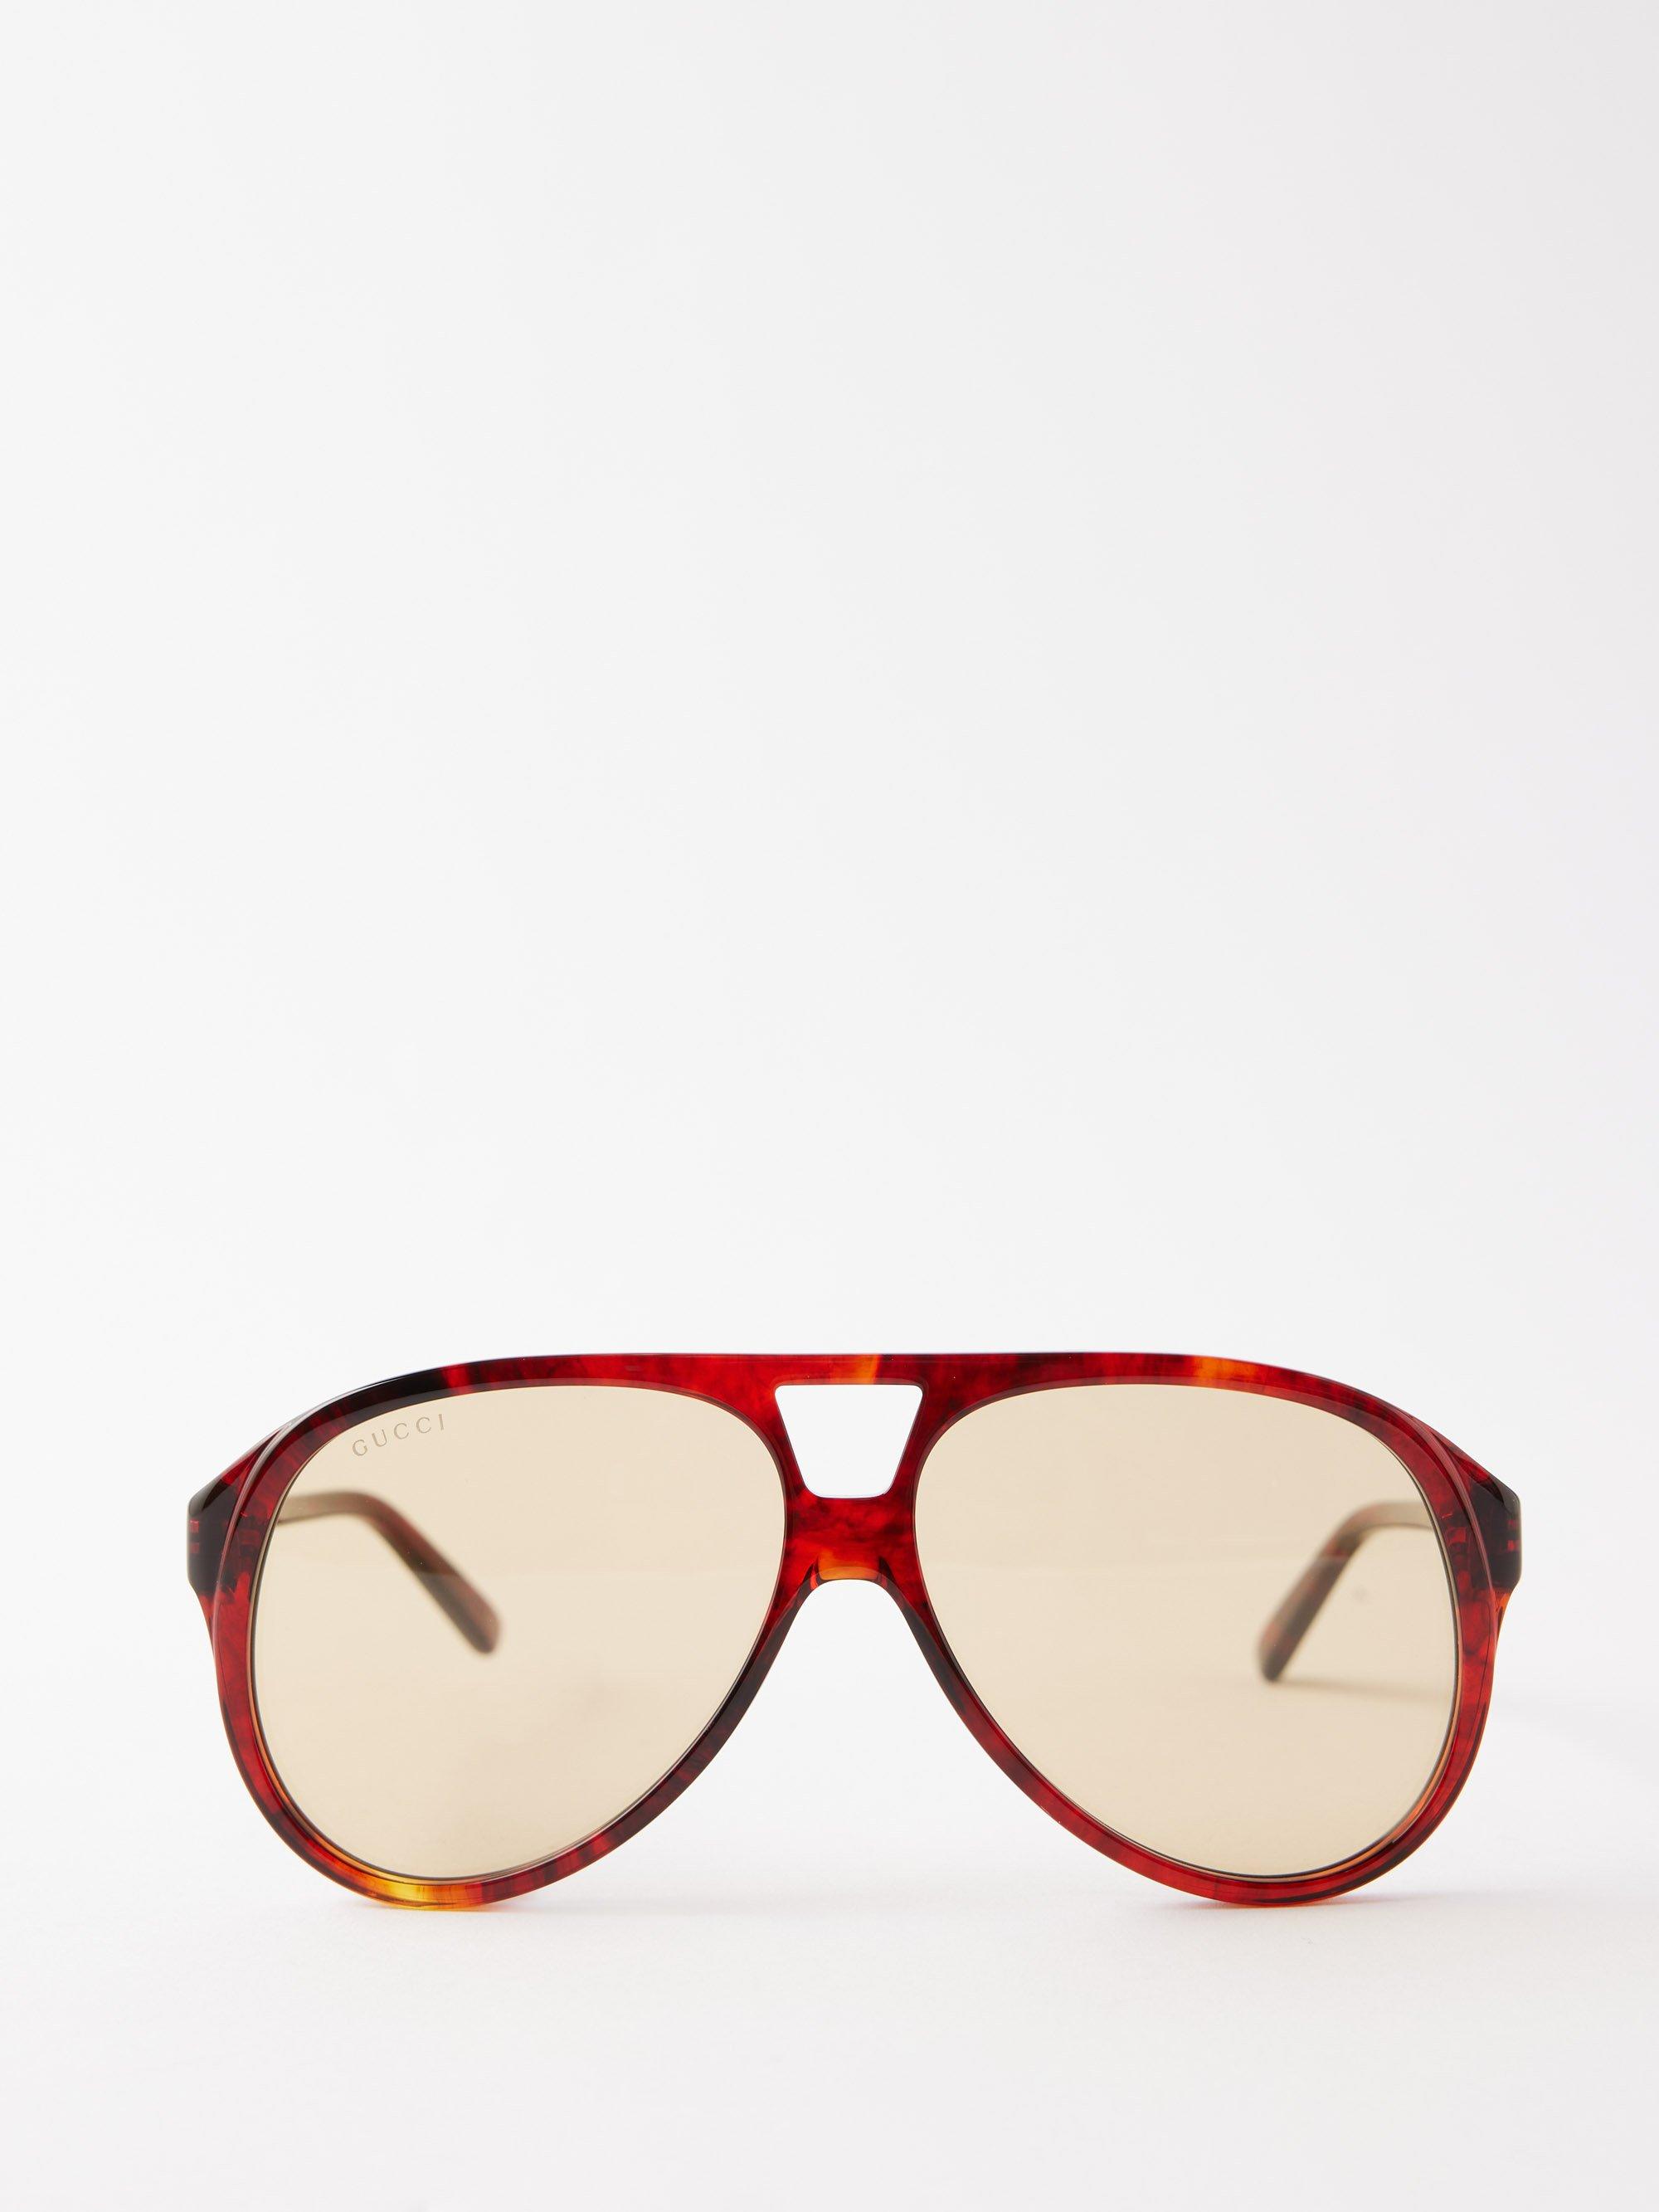 Gucci | Accessories | Authentic Vintage Gucci Bamboo Aviator Sunglasses  Glasses | Poshmark